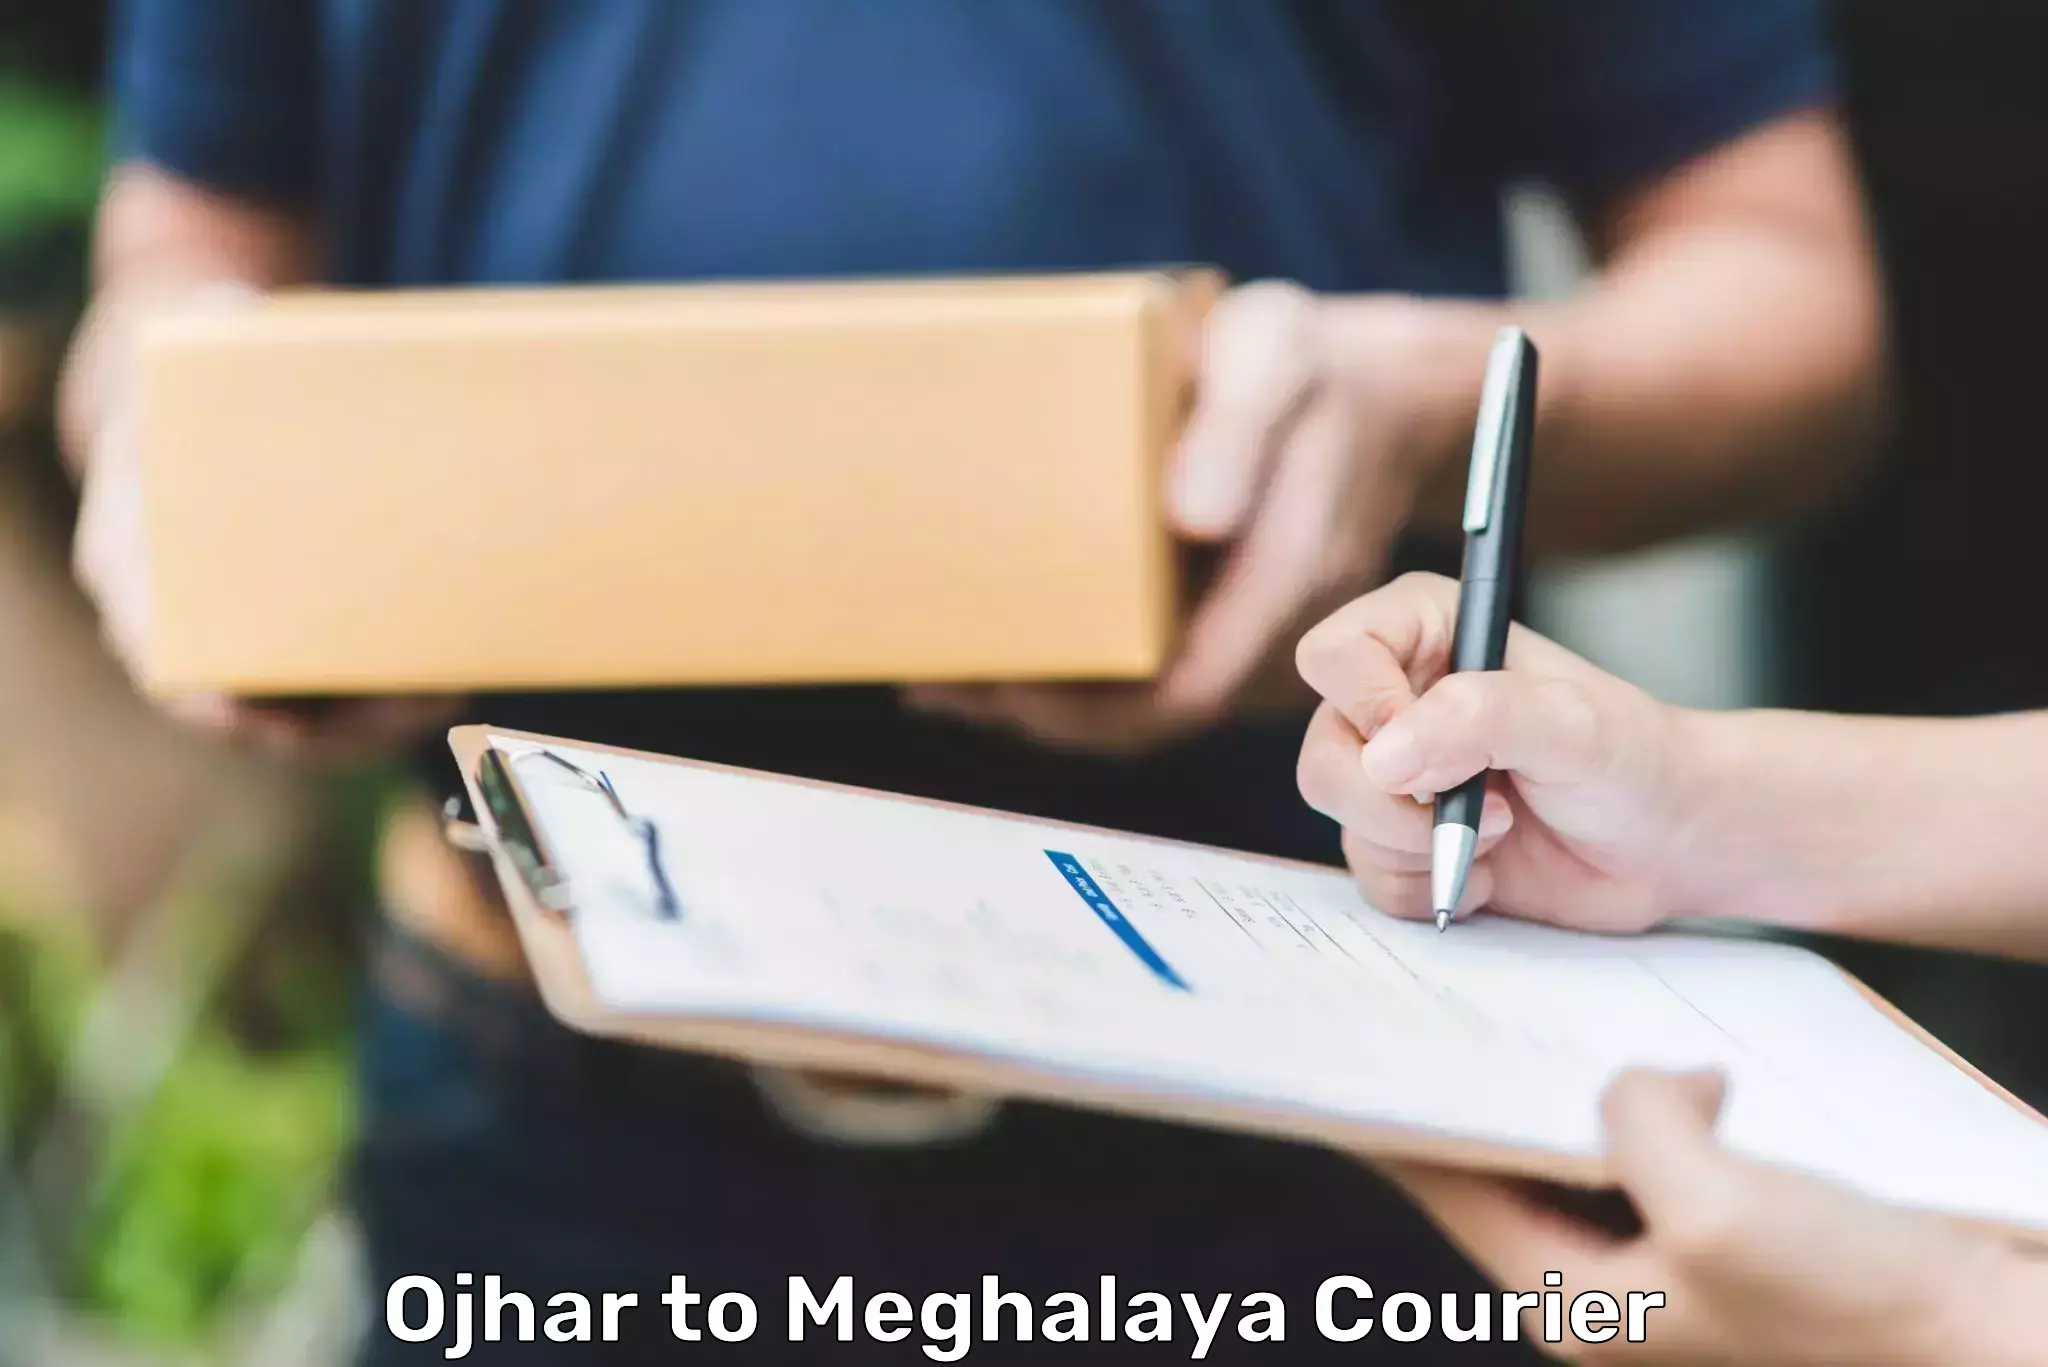 Bulk courier orders in Ojhar to Jowai